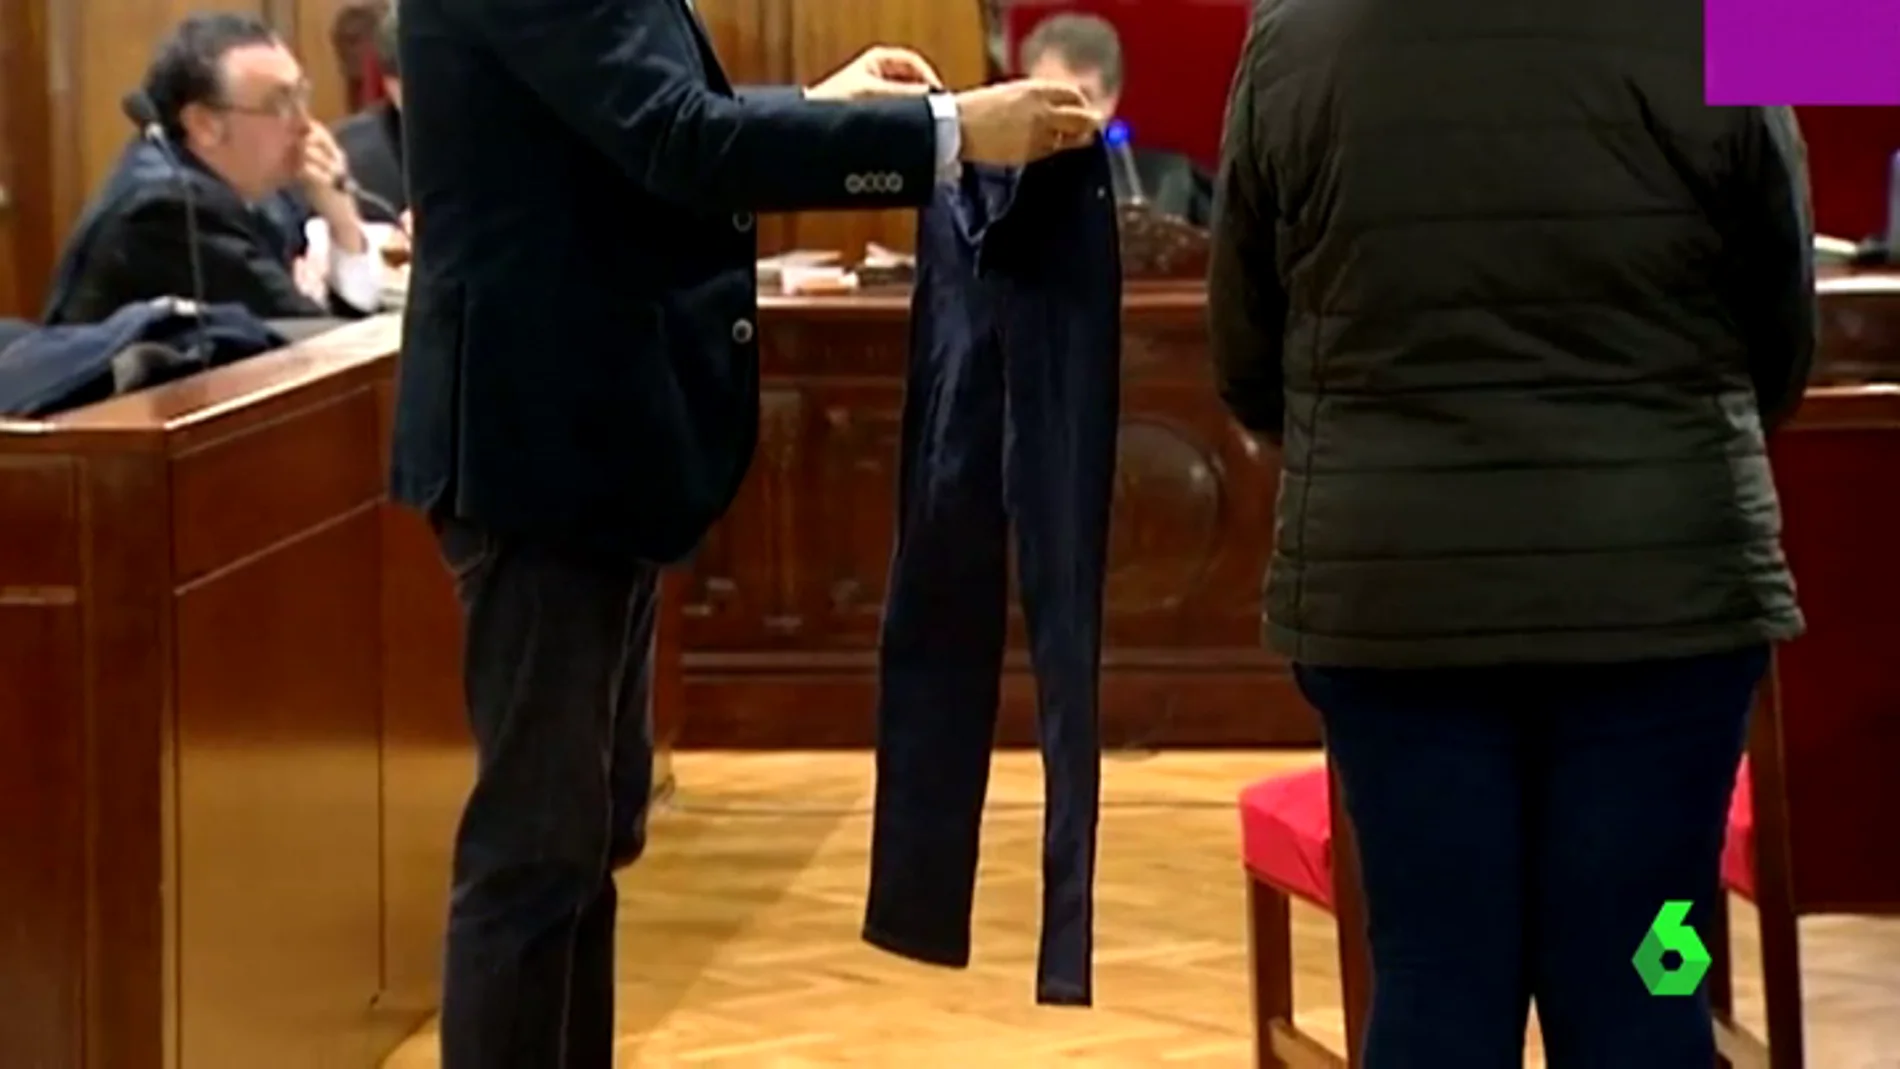 Los pantalones quemados de la víctima mostrados durante el juicio